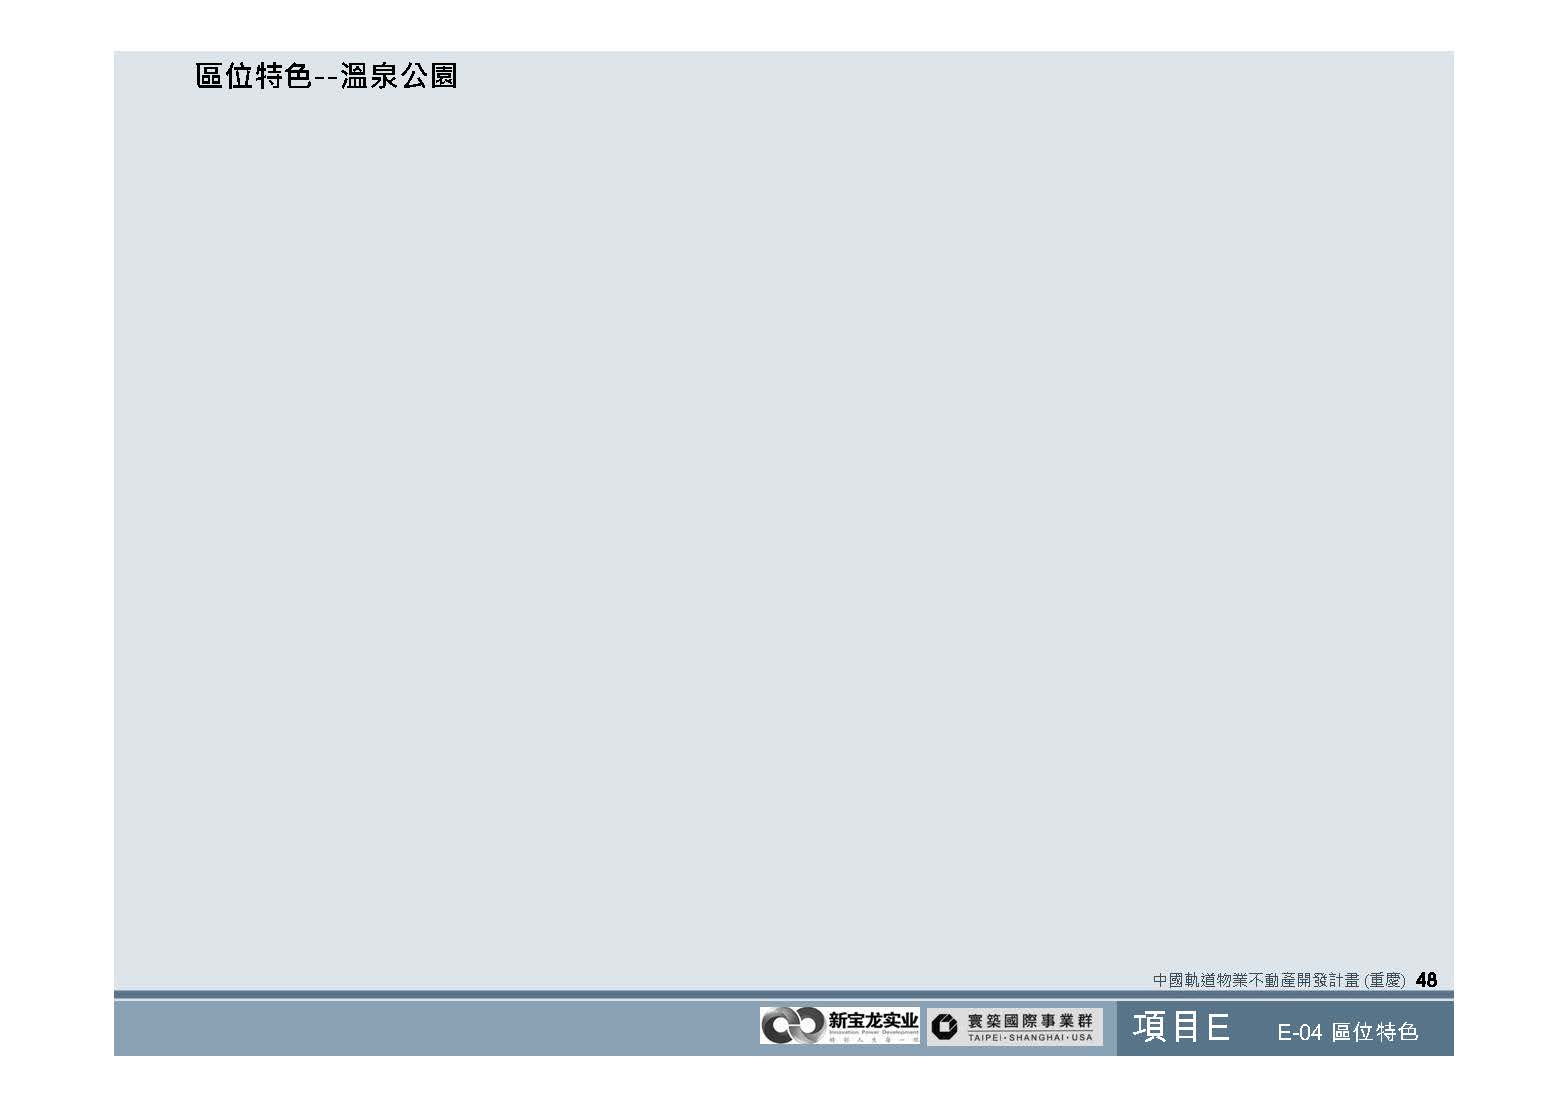 20100812-中國軌道物業不動產開發計畫(重慶)_頁面_49